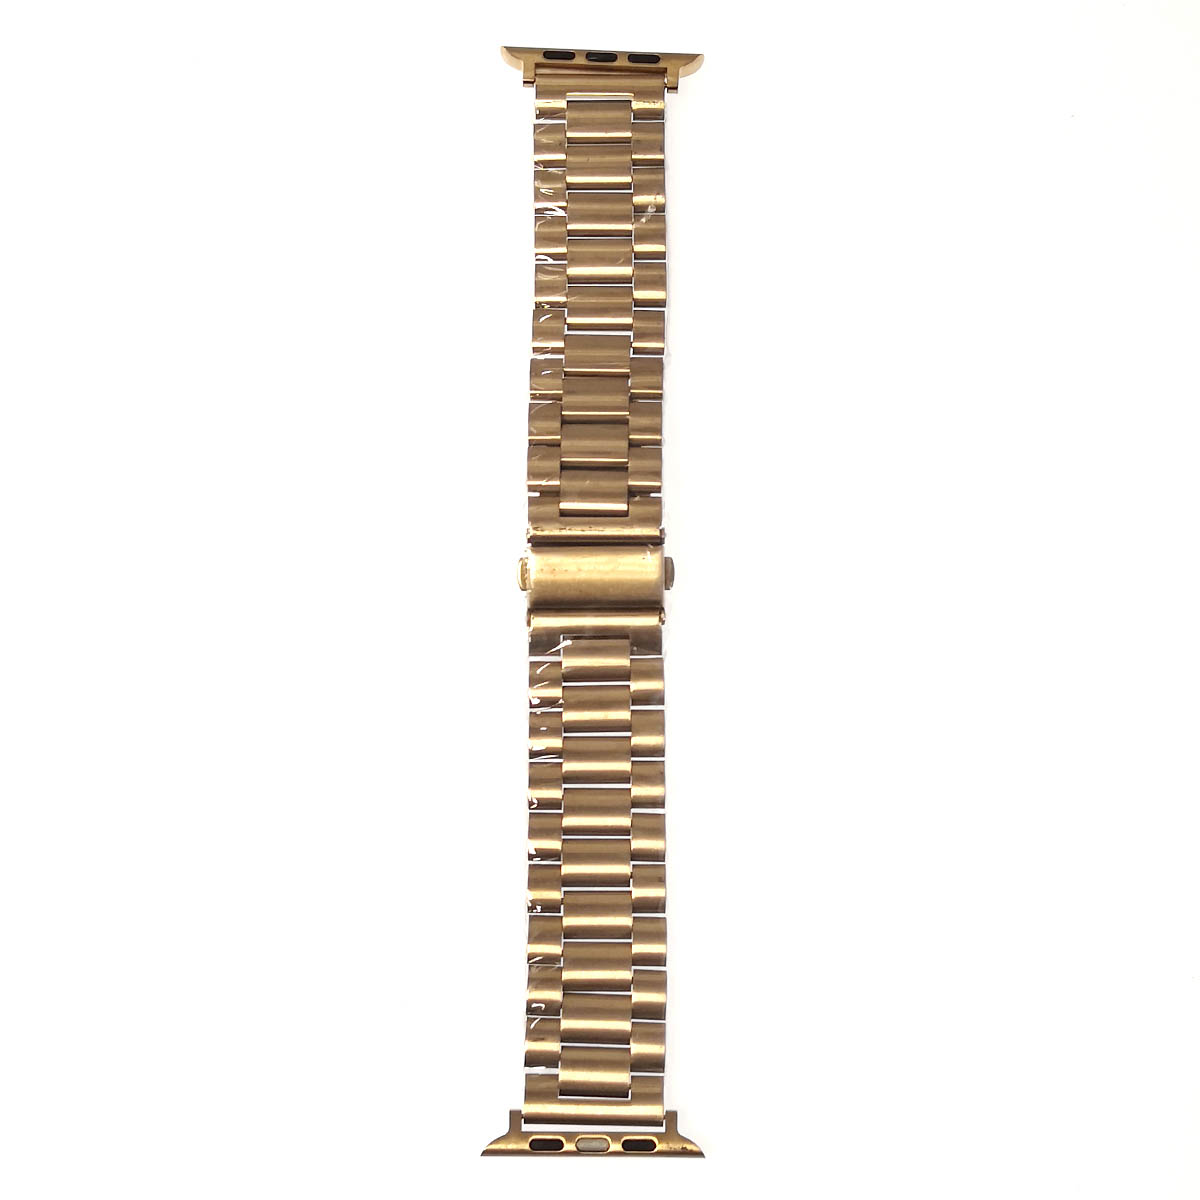 Ремешок для Apple Watch 38-40 mm, нержавеющая сталь, цвет бронзовый